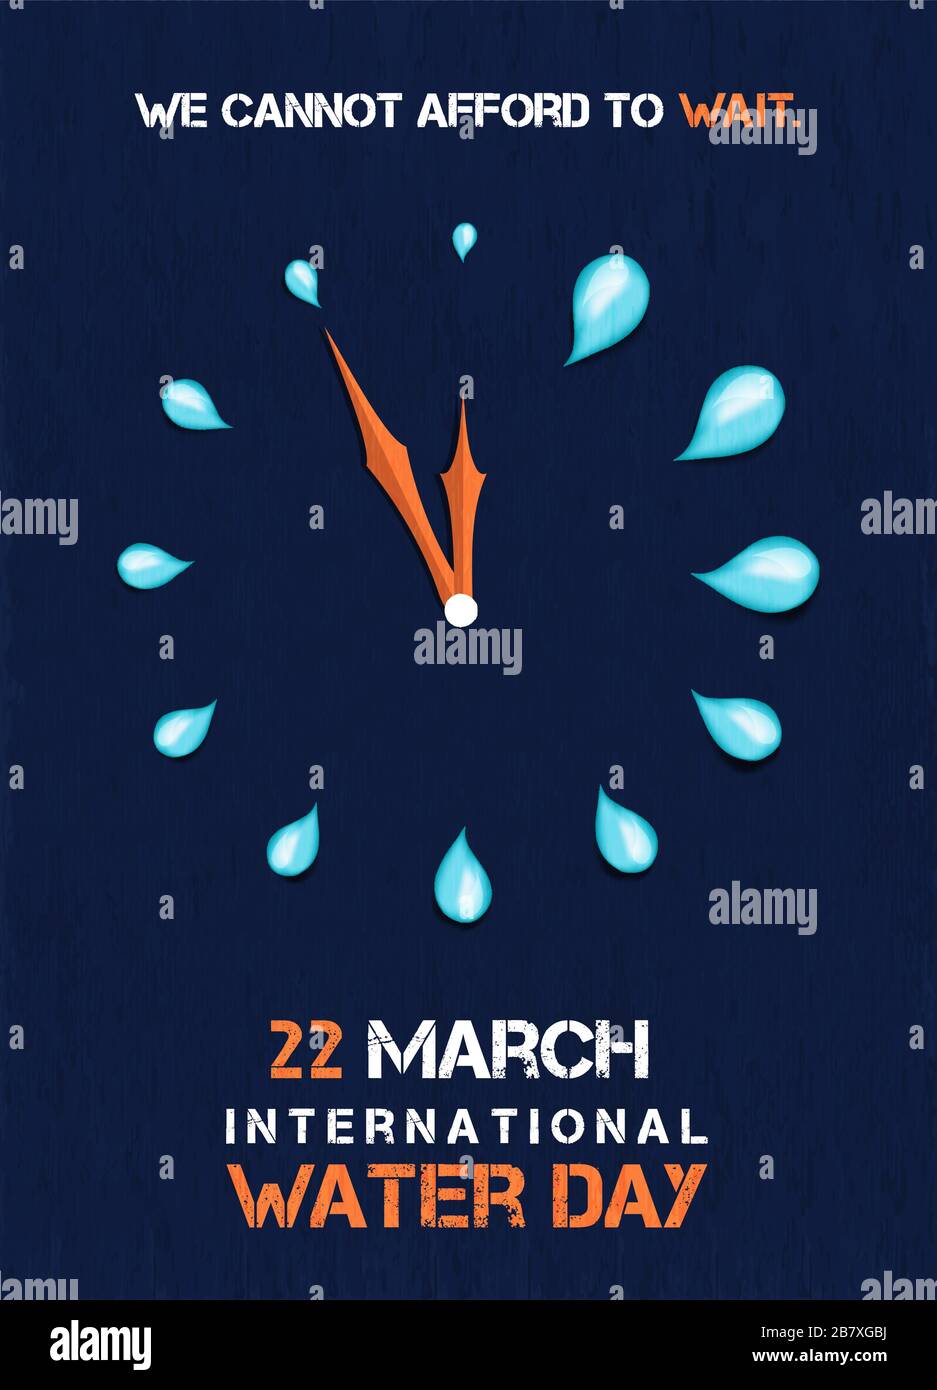 Weltwassertag Grußkarte mit Uhr mit Wassertropfen, wir können das Konzept nicht abwarten. Demonstration der Umweltveranstaltung am 22. März. Stock Vektor